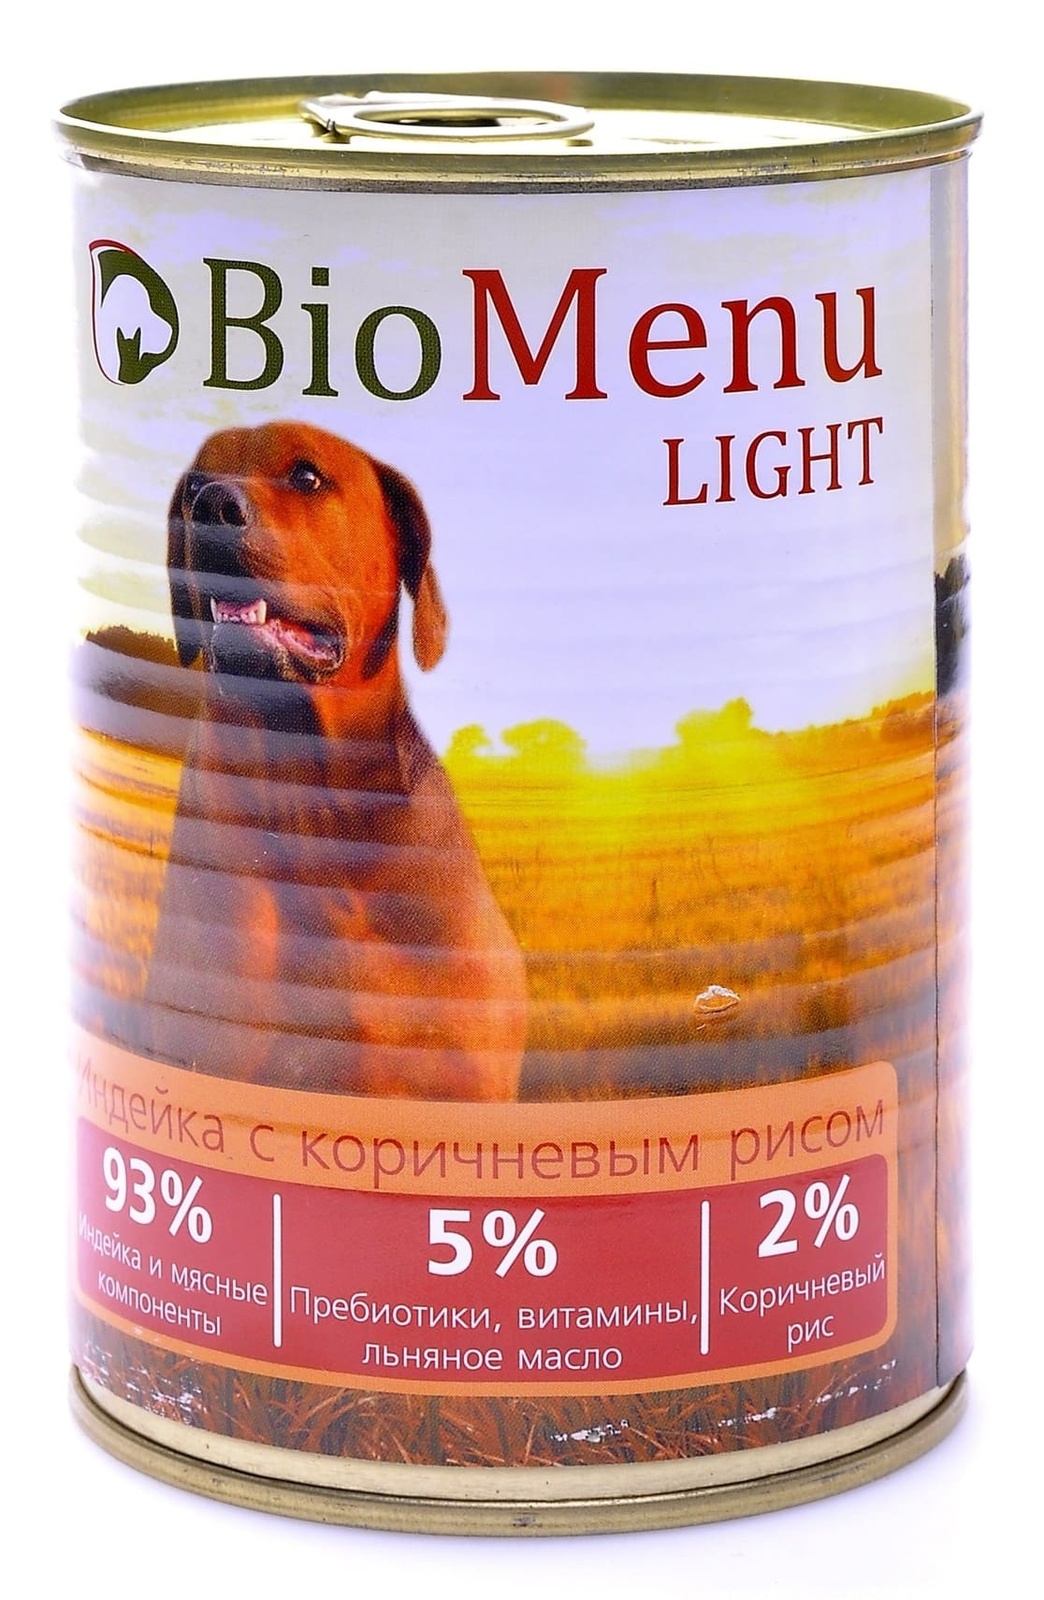 BioMenu BioMenu консервы для собак низкокалорийные с индейкой и коричневым рисом (100 г) biomenu biomenu гипоаллергенные консервы для собак индейка и кролик 100 г